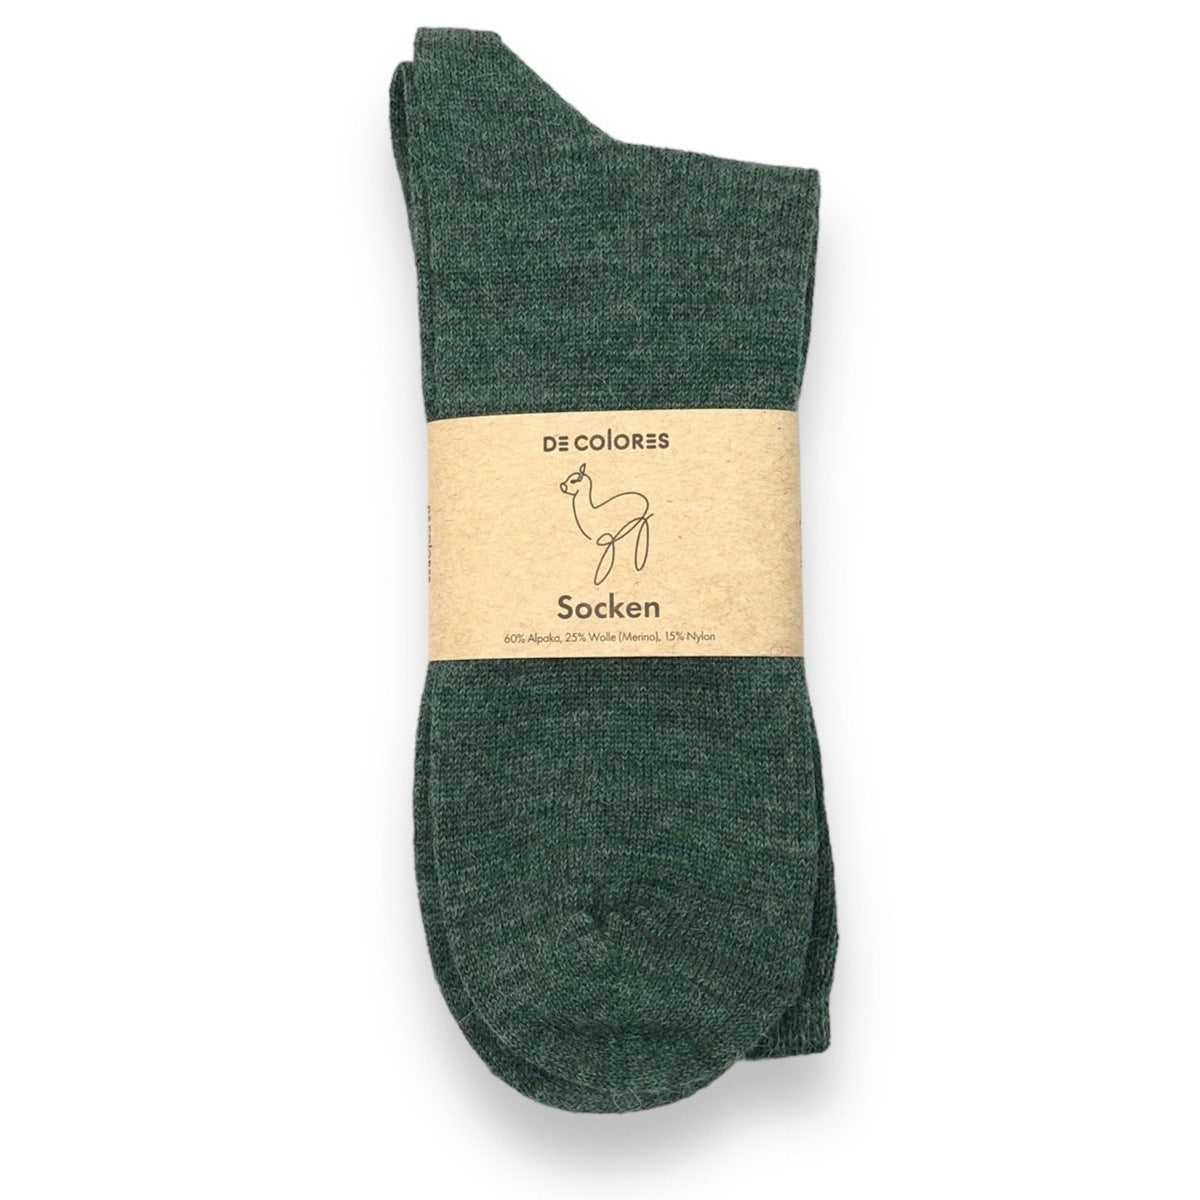 Socken aus Alpakawolle